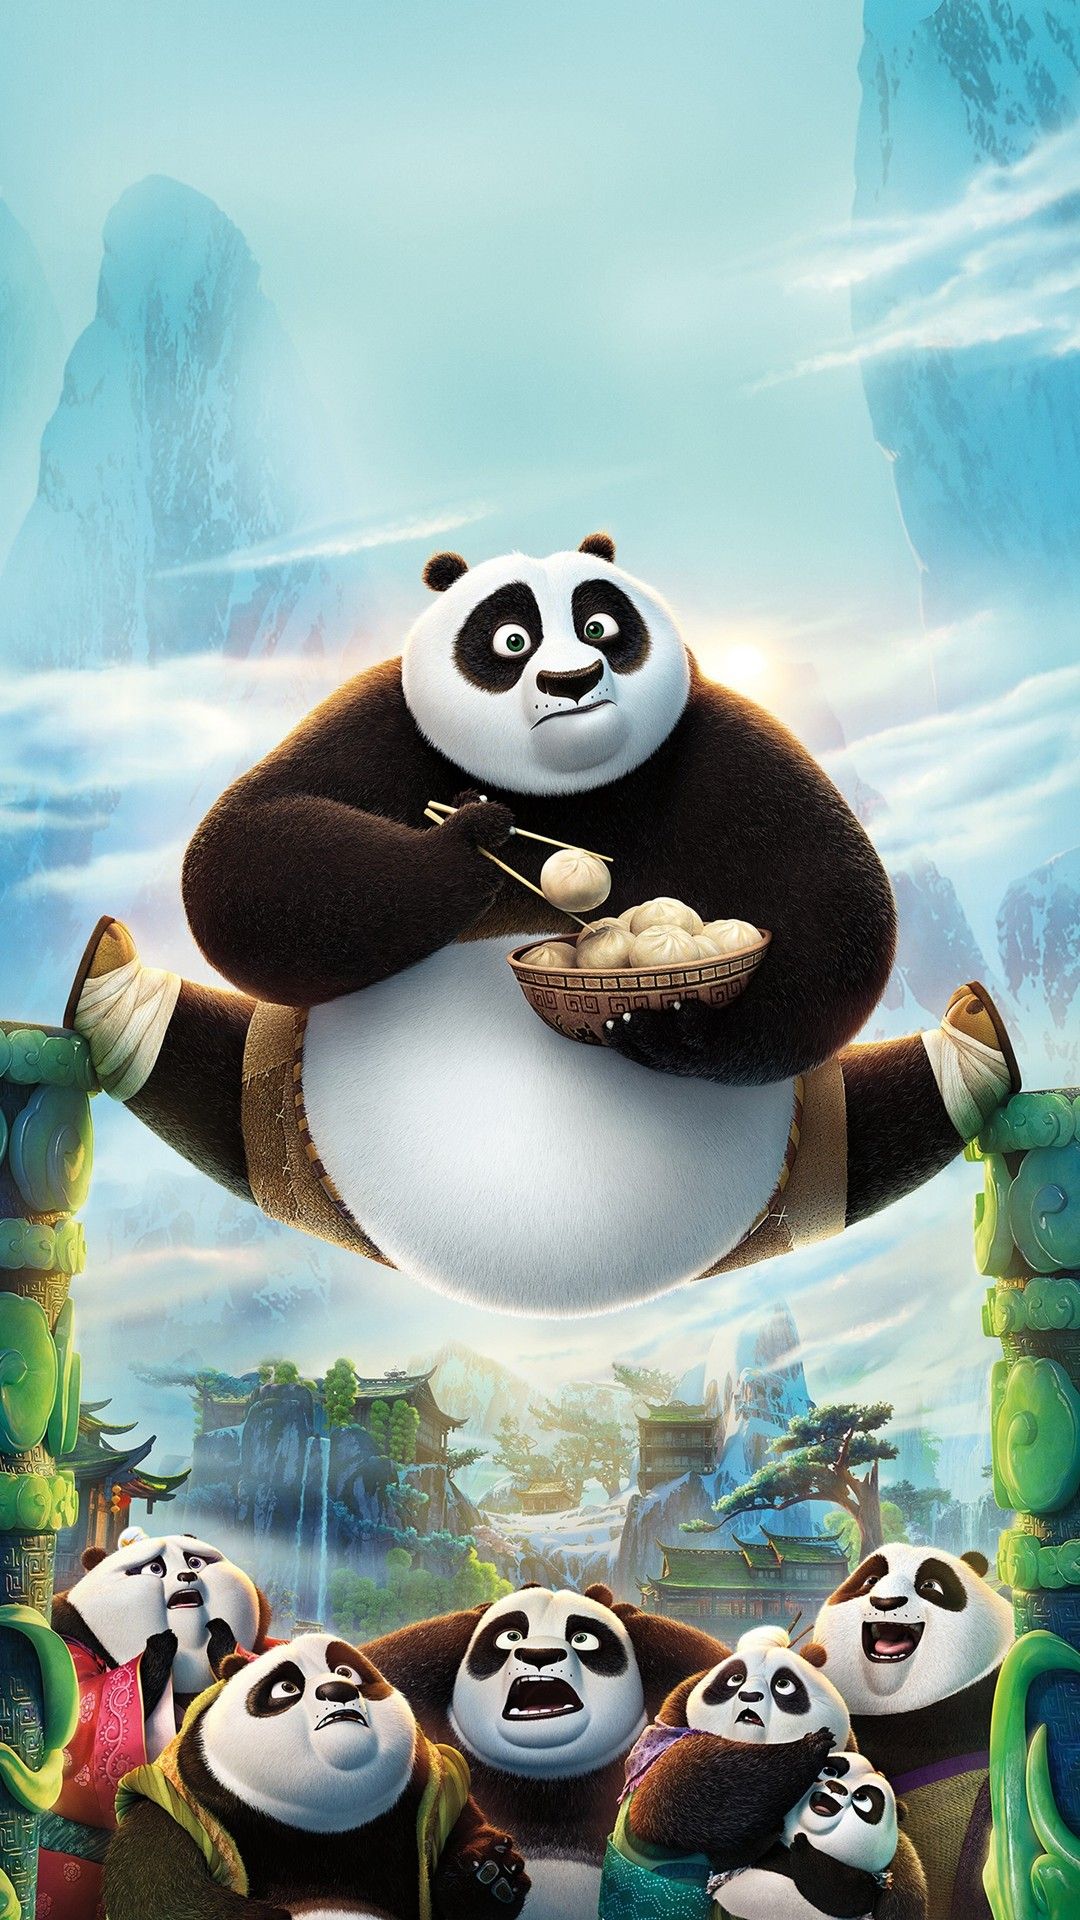 4K wallpaper: Cute Panda HD Wallpaper For Mobile